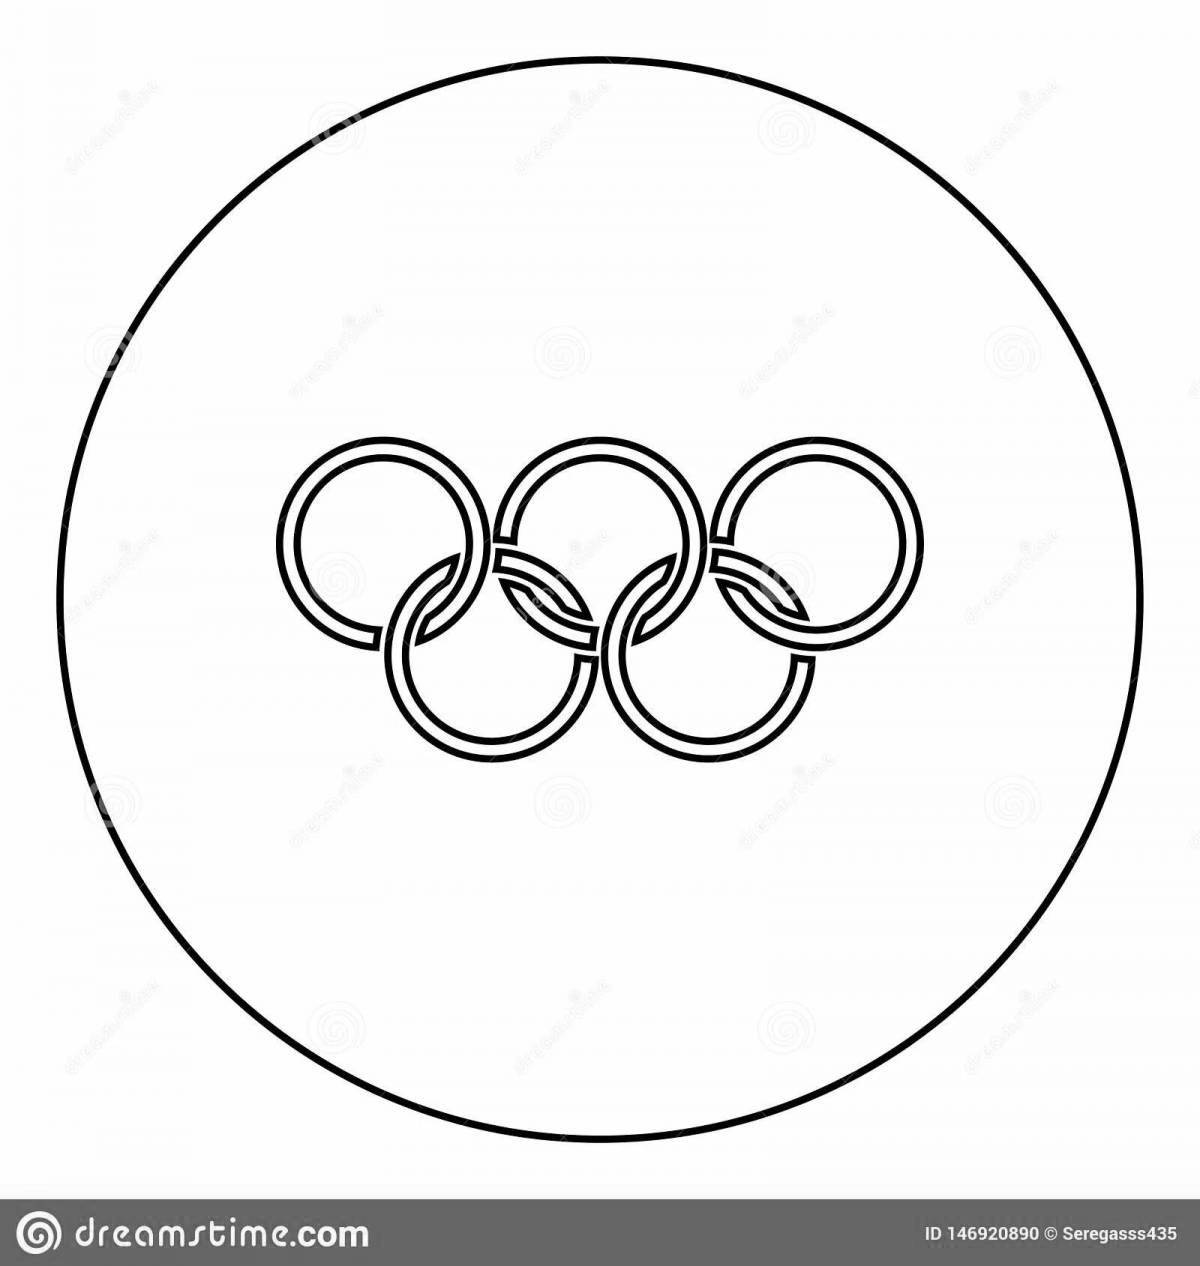 Увлекательная раскраска олимпийских колец для самых маленьких